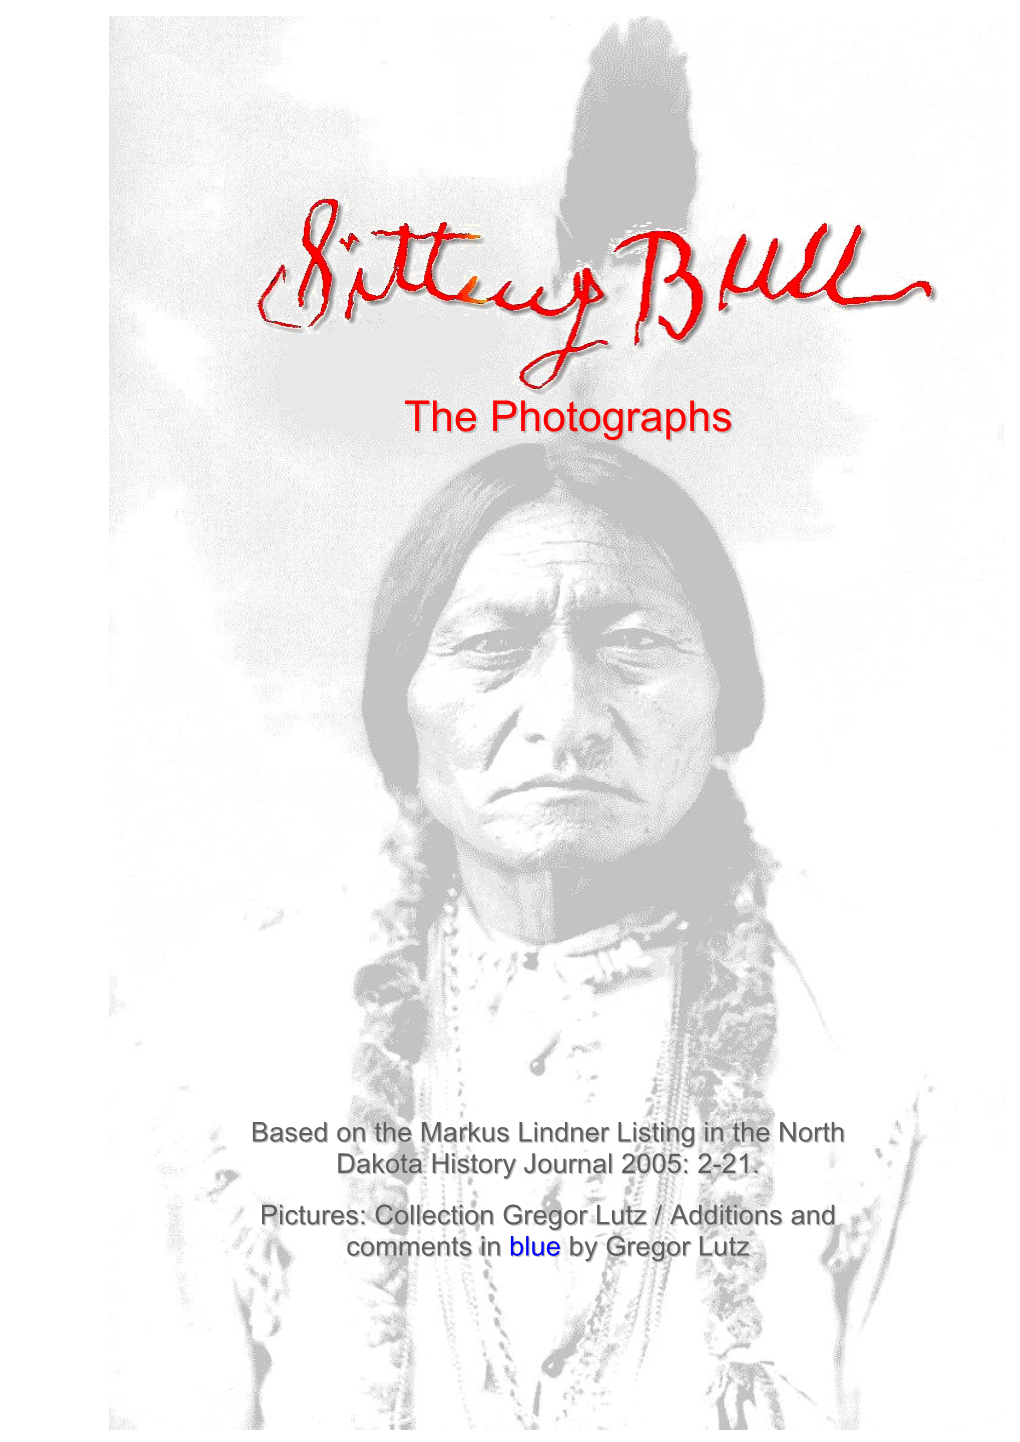 II. Sitting Bull's Family / Wives & Children